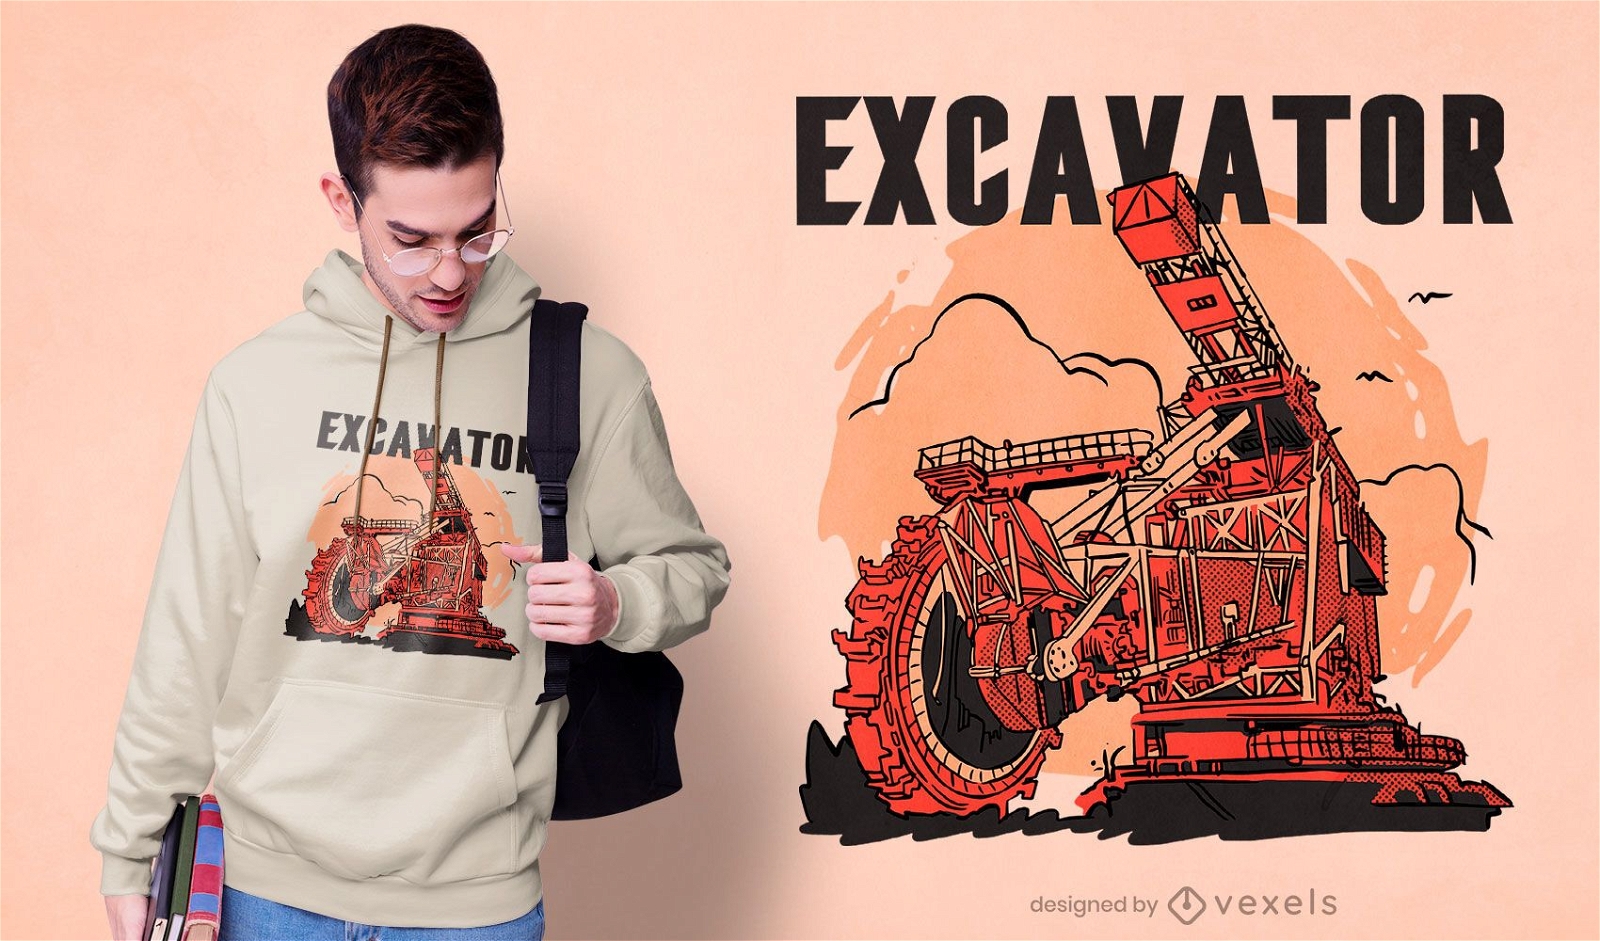 Bucket wheel excavator t-shirt design